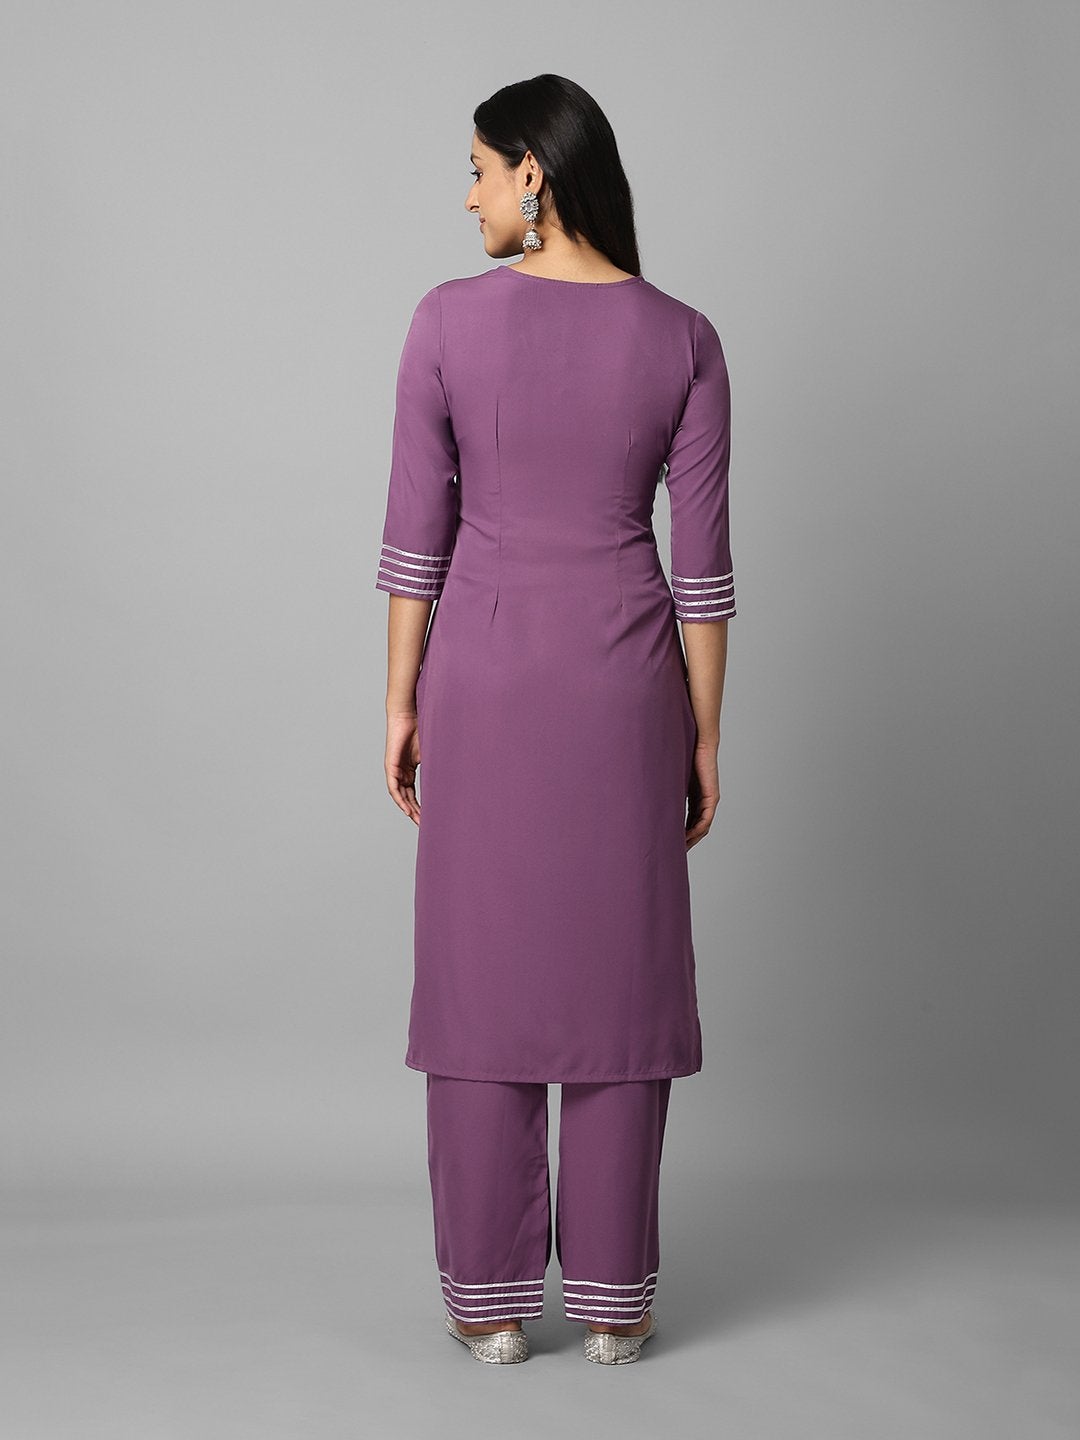 Women's Solid Purple Side Slit Straight Kurta And Palazzo Set - Azira